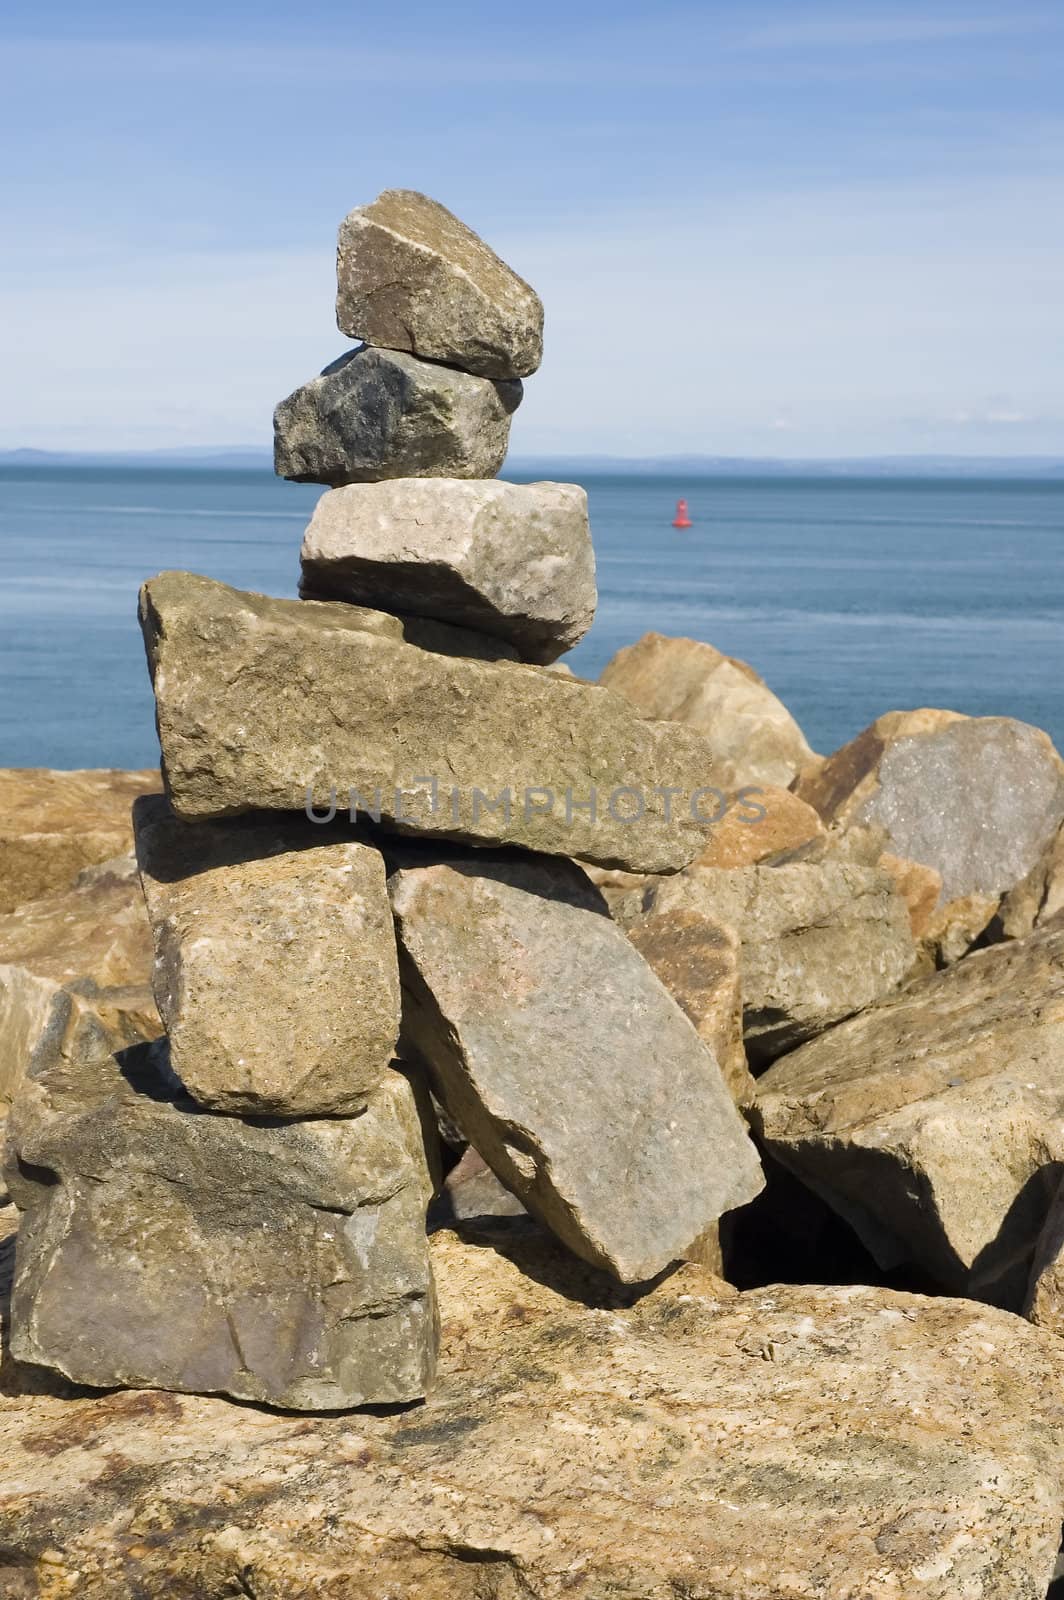 a rock statue built near the ocean